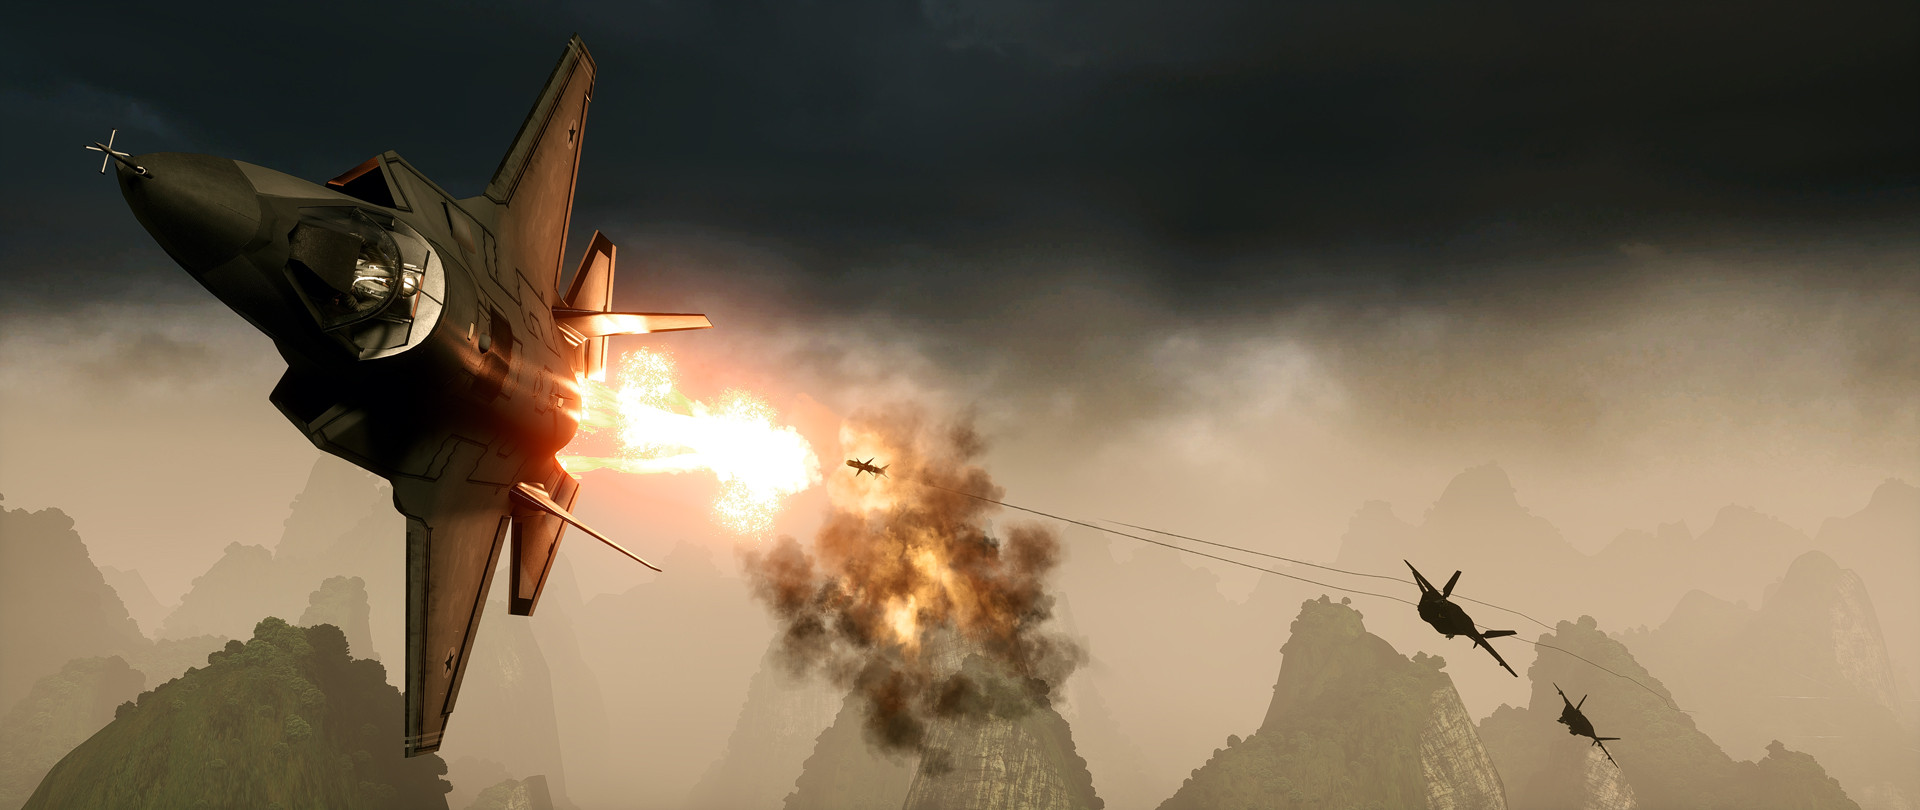 Battlefield 4 Screenshots Become Stunning Photographs